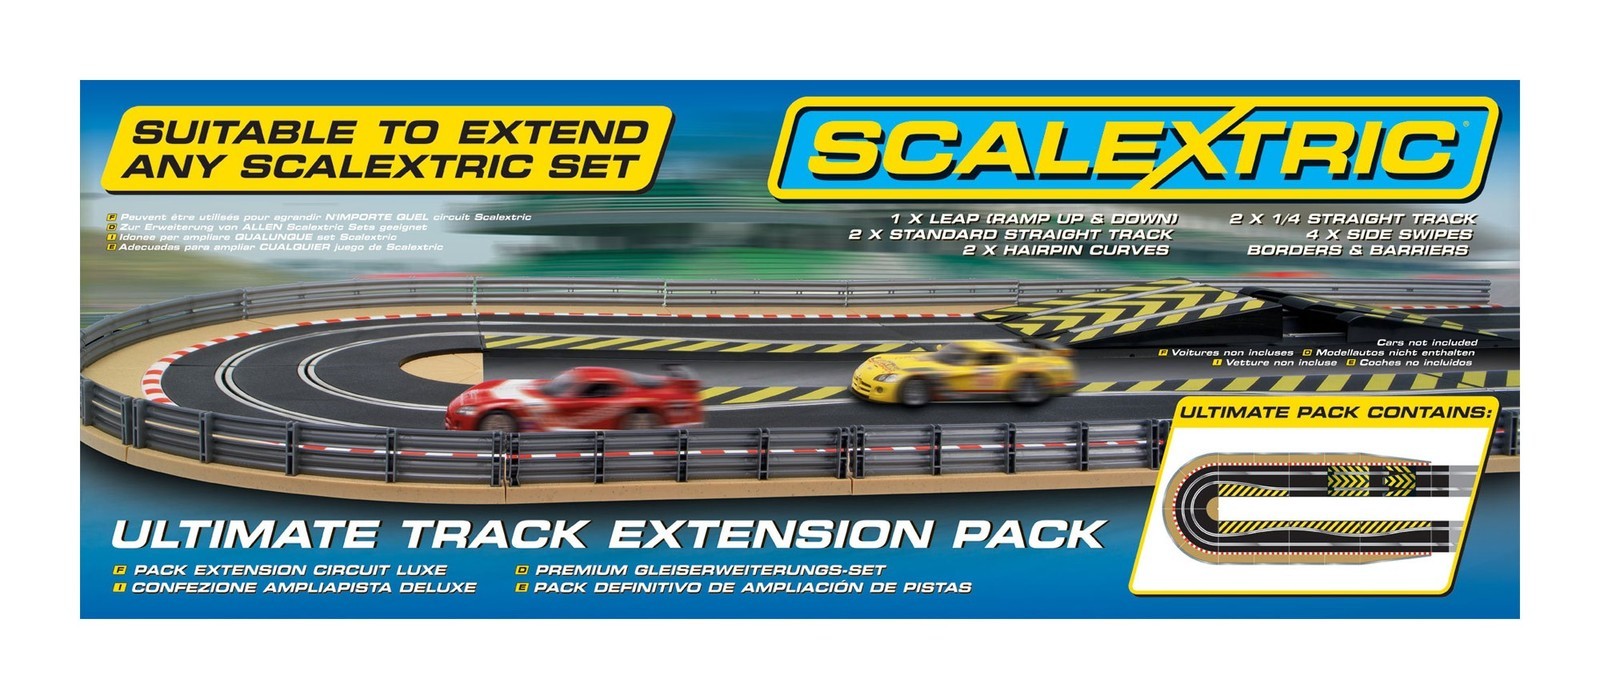 Extended tracks. Scalextric track. Scalextric счетчик кругов. Scalextric инструкция по сборке. Трек Scalextric купить.